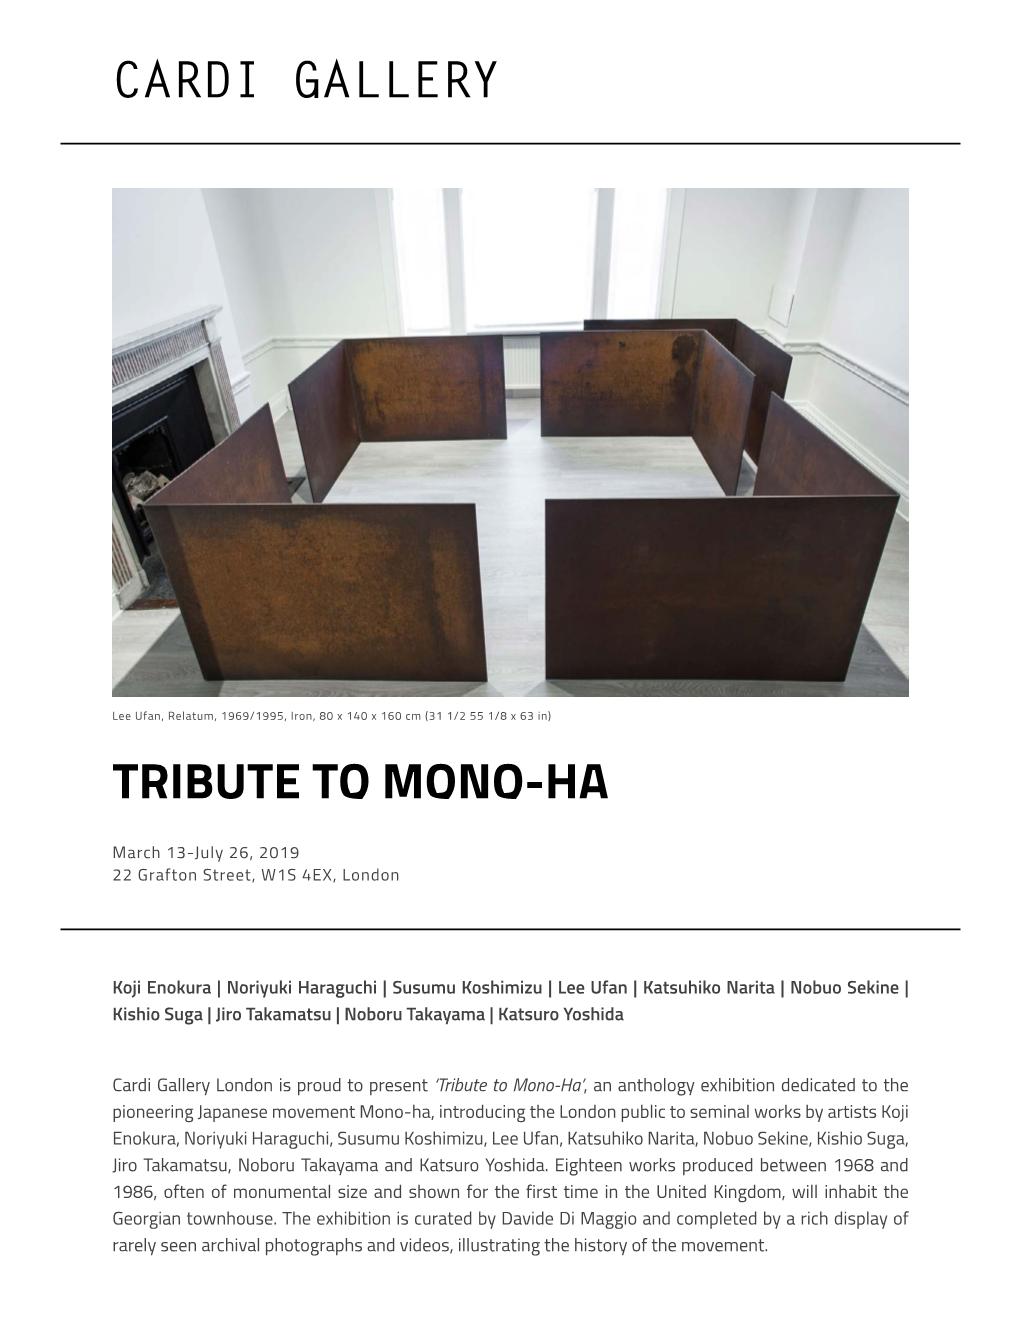 Cardi Gallery Tribute to Mono-Ha